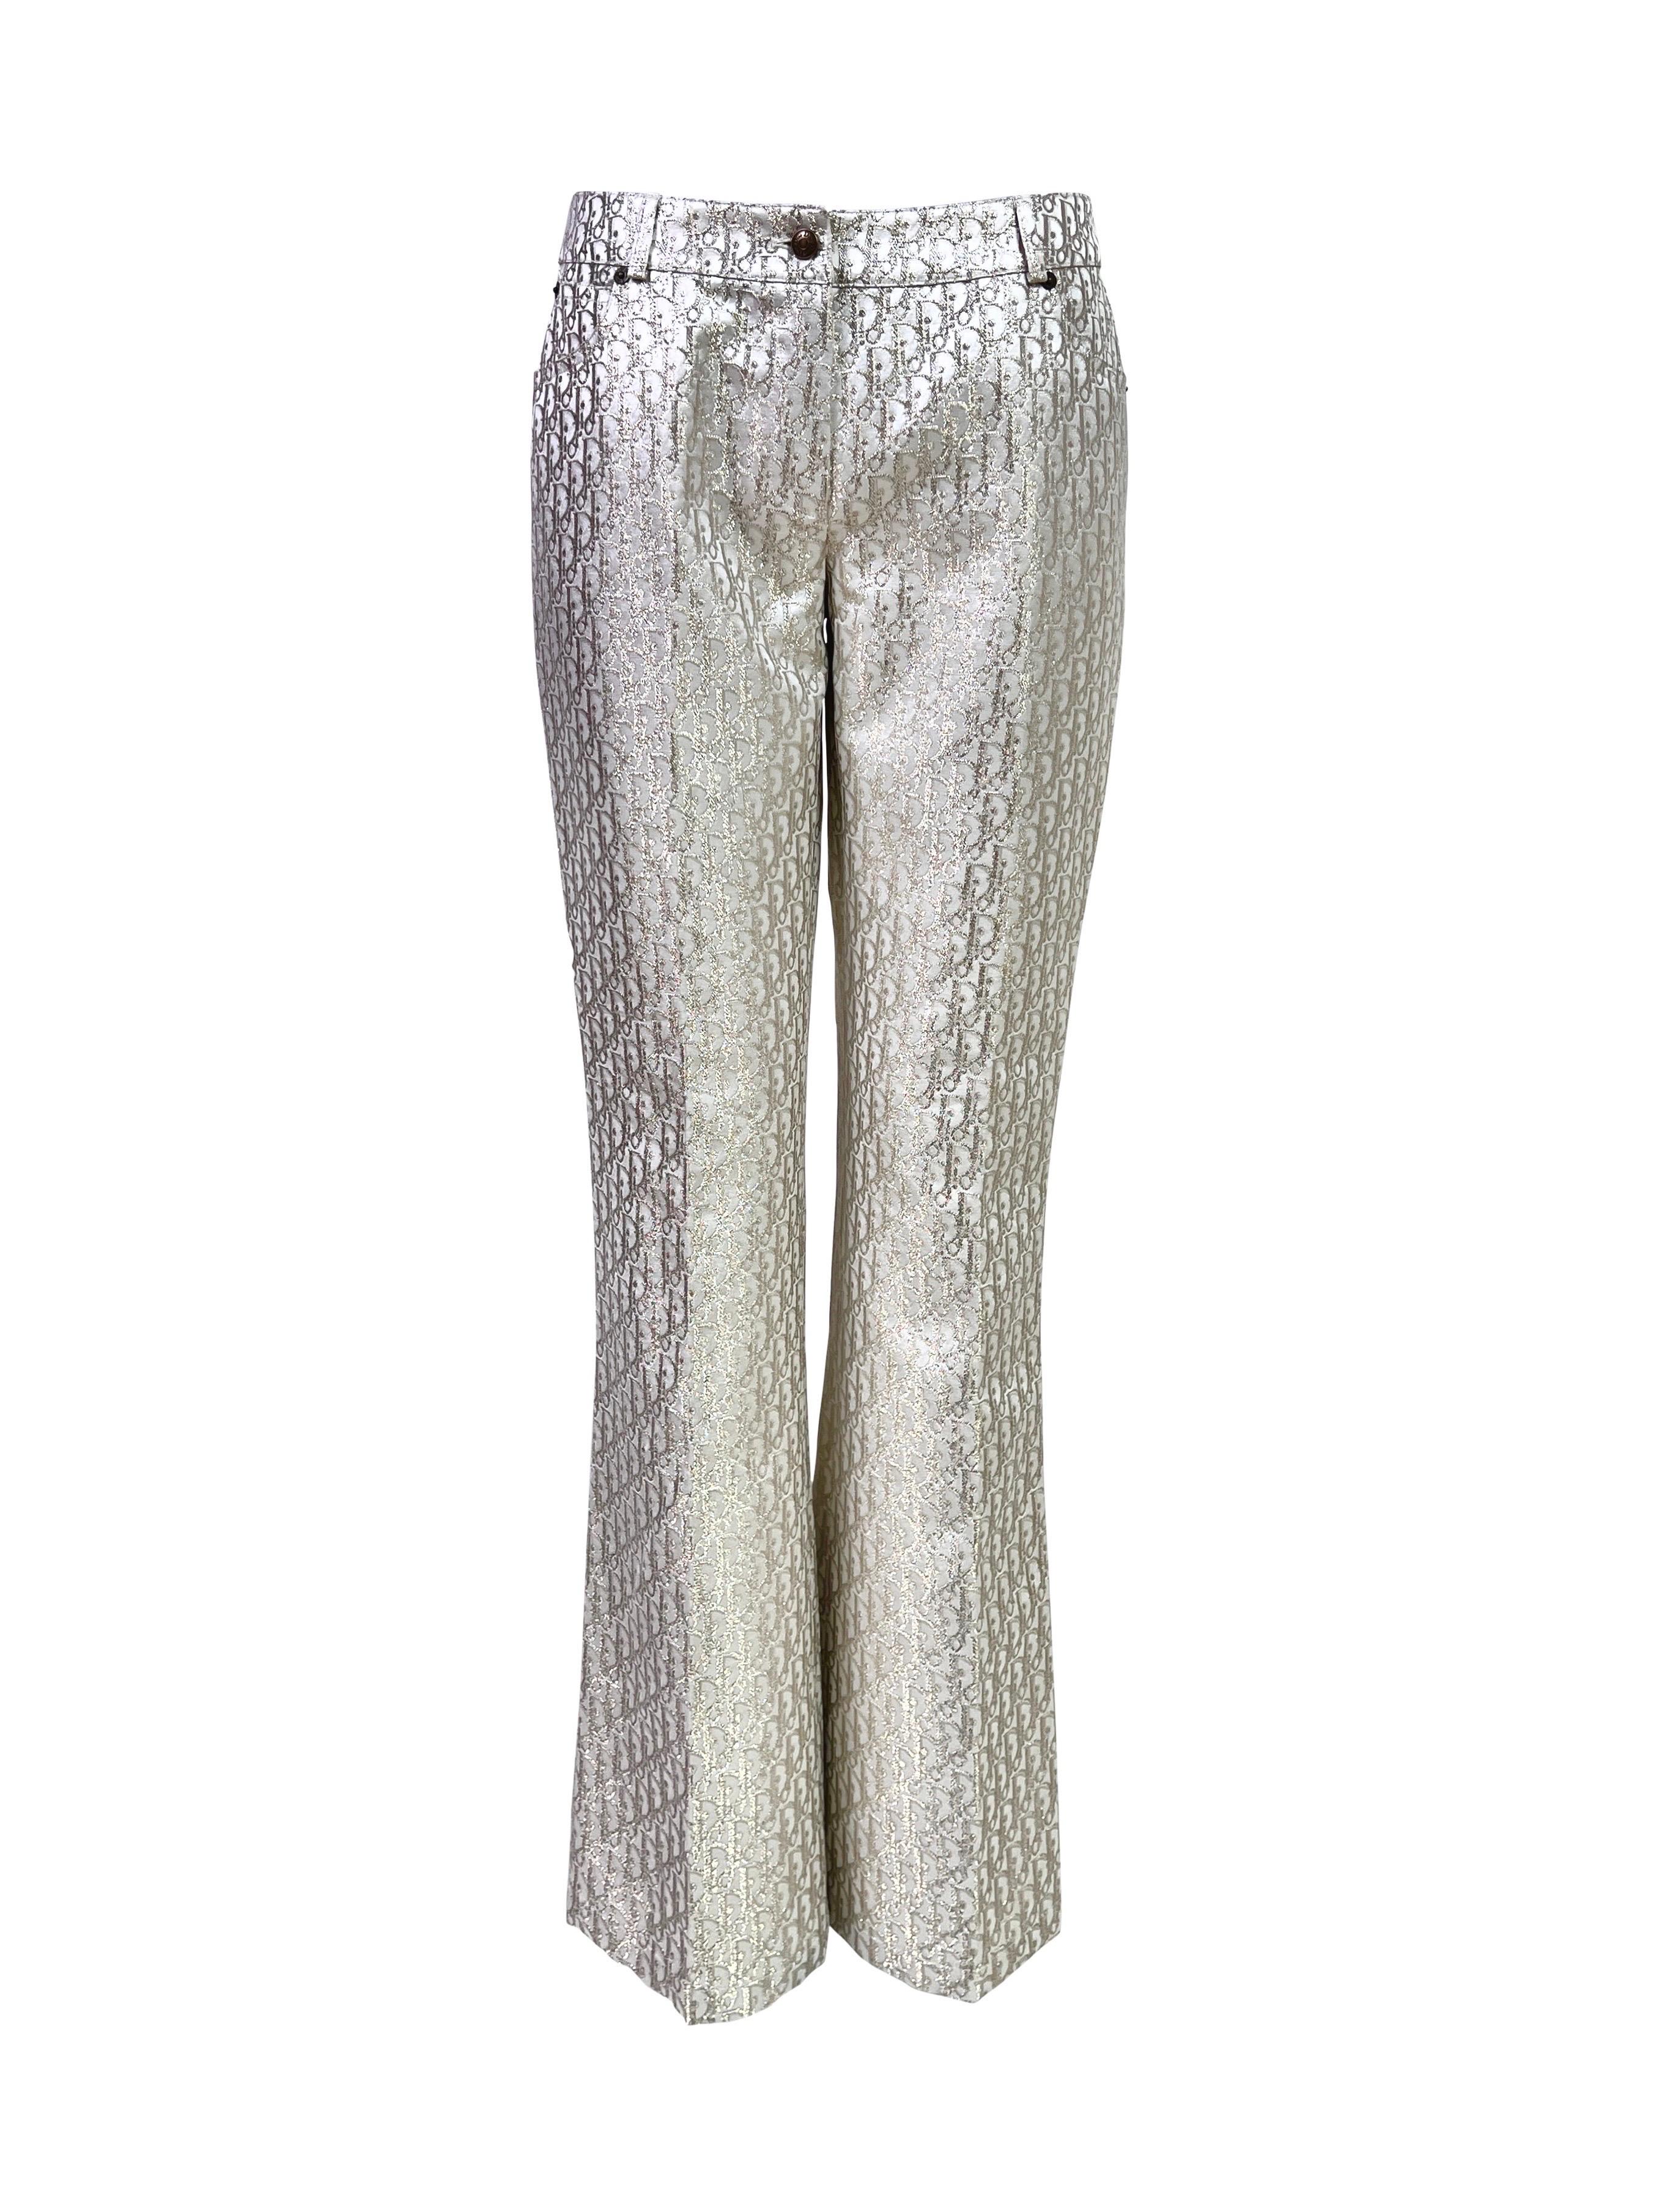 QV Archive est fier de présenter une paire rare de pantalons Dior Monogram de la collection Dior Automne 2004 dans une magnifique couleur blanc cassé avec un tissu jacquard monogramme aux reflets métalliques dorés sophistiqués. Même textile que